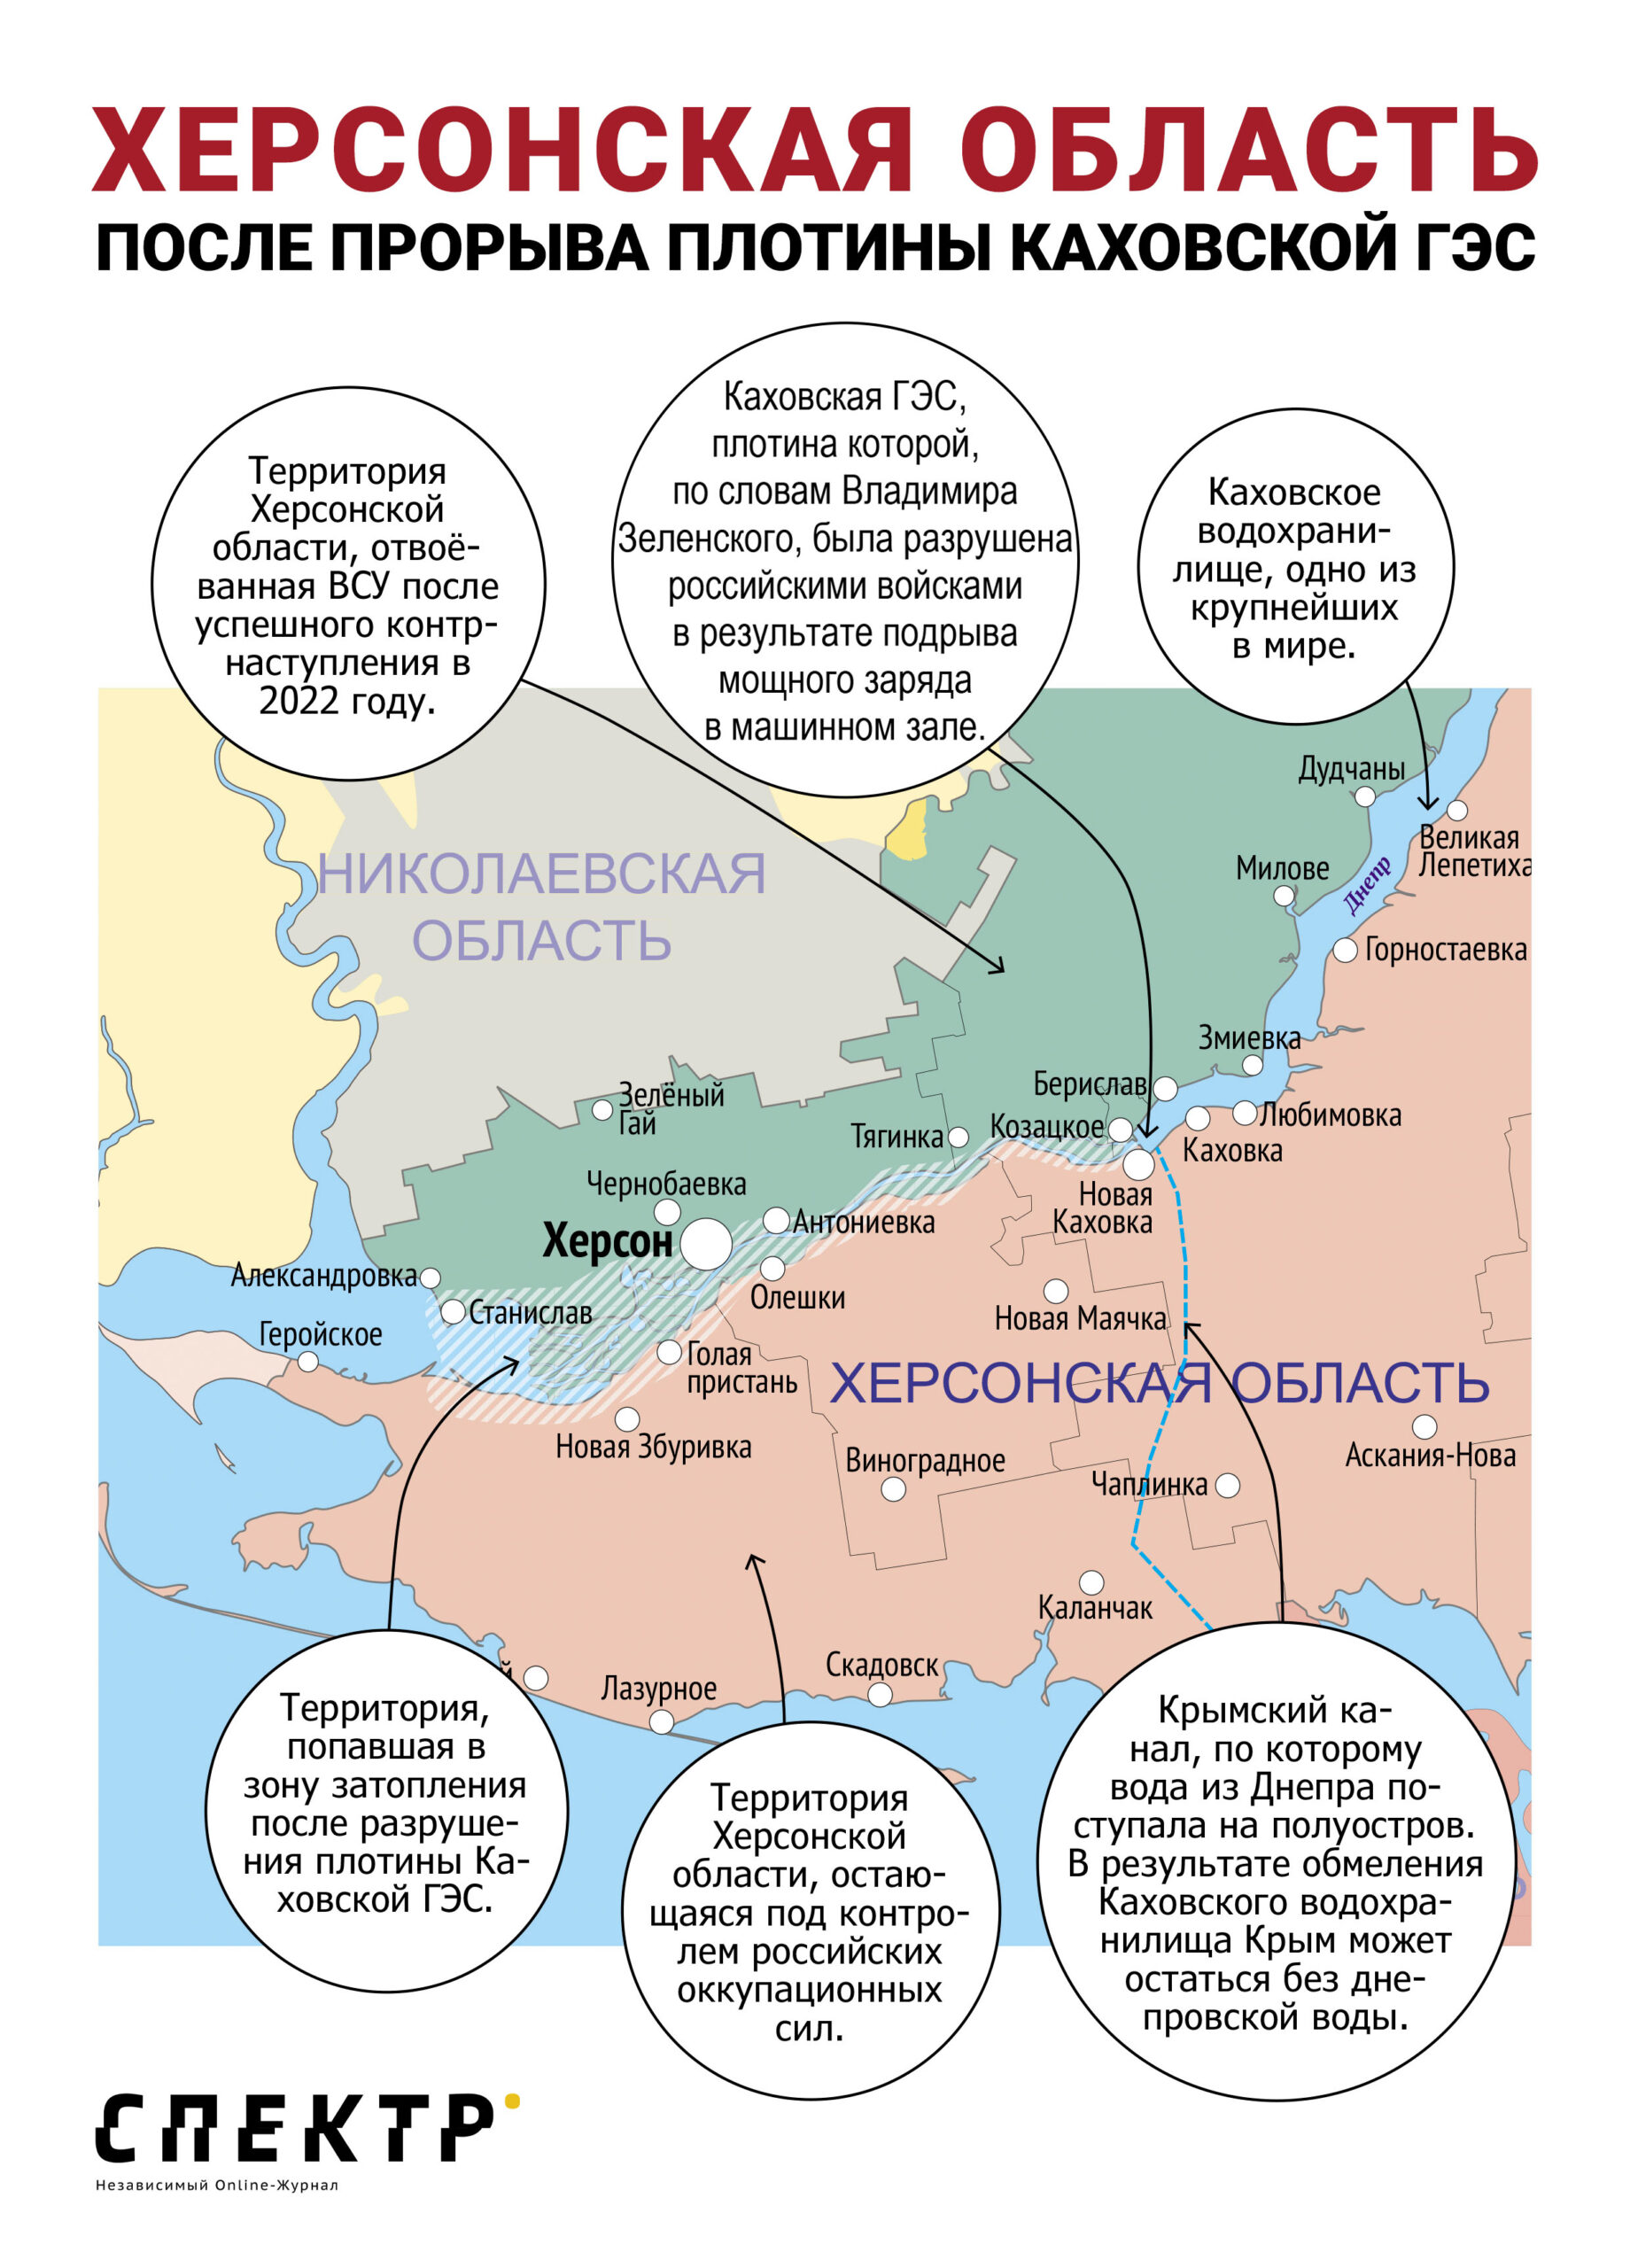 Херсонская область после прорыва плотины Каховской ГЭС. Инфографика Максим Кузахметов/SpektrPress